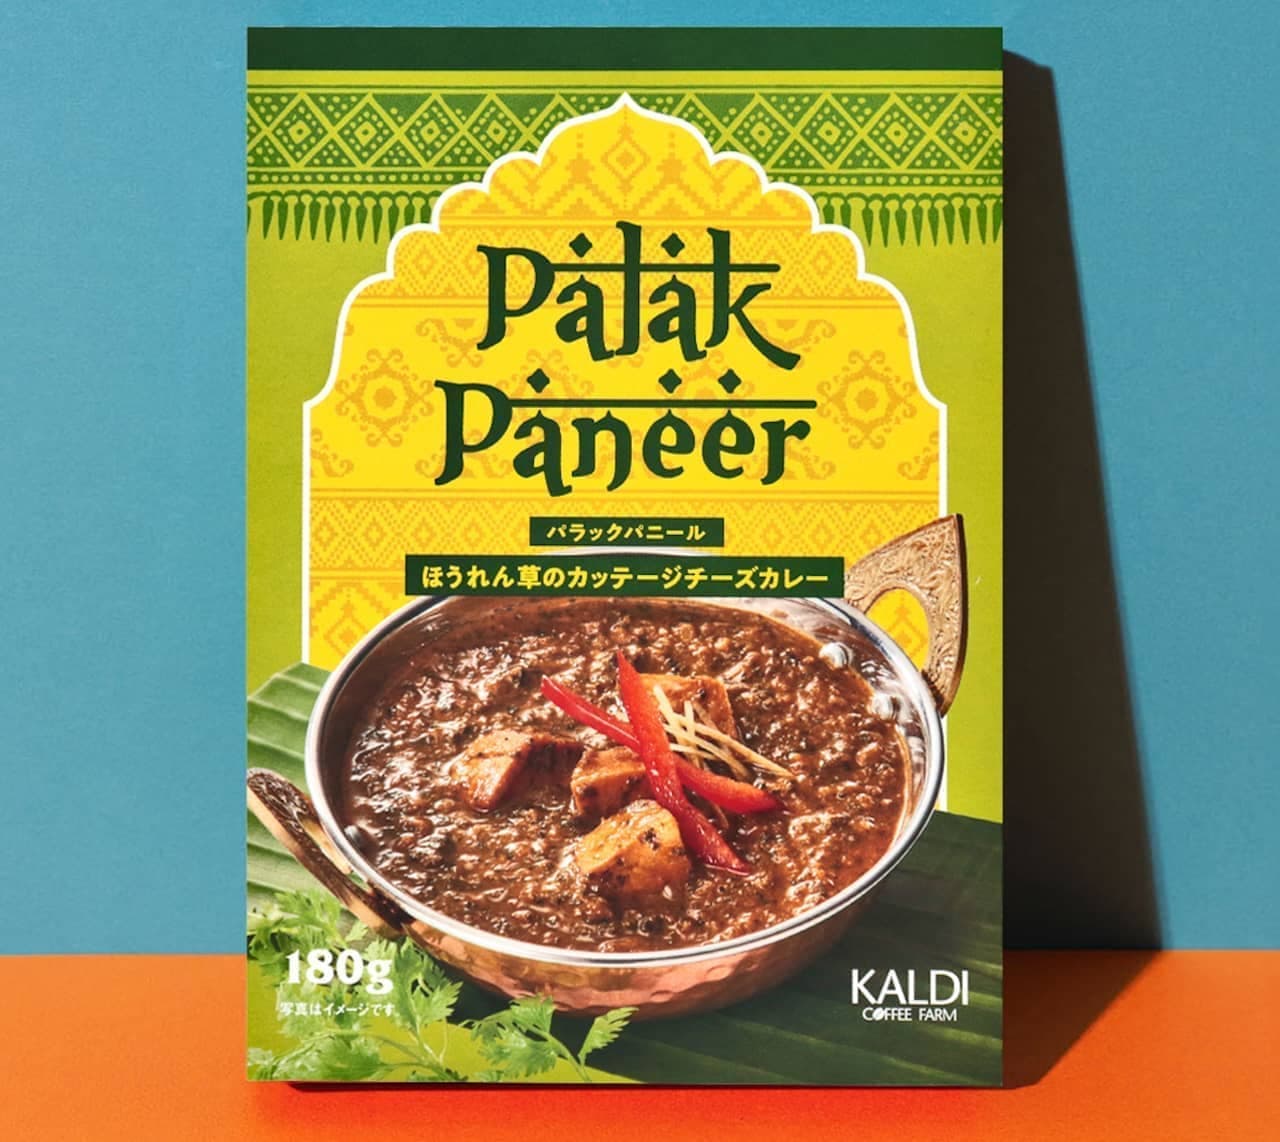 KALDI's "Original Indian Curry Palak Paneer" renewed